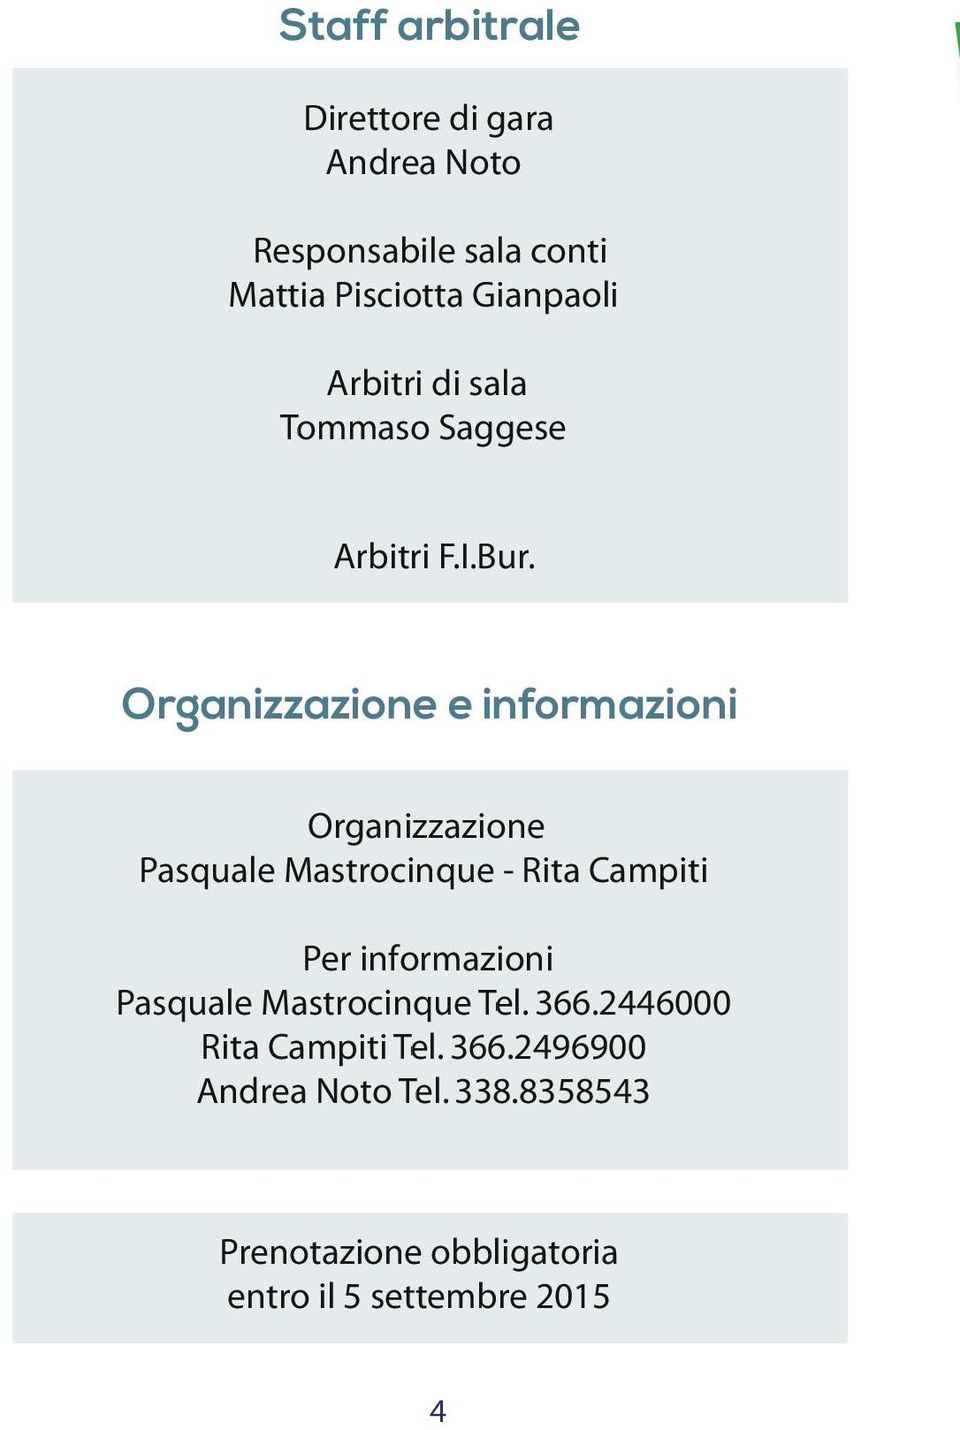 Organizzazione e informazioni Organizzazione Pasquale Mastrocinque - Rita Campiti Per informazioni